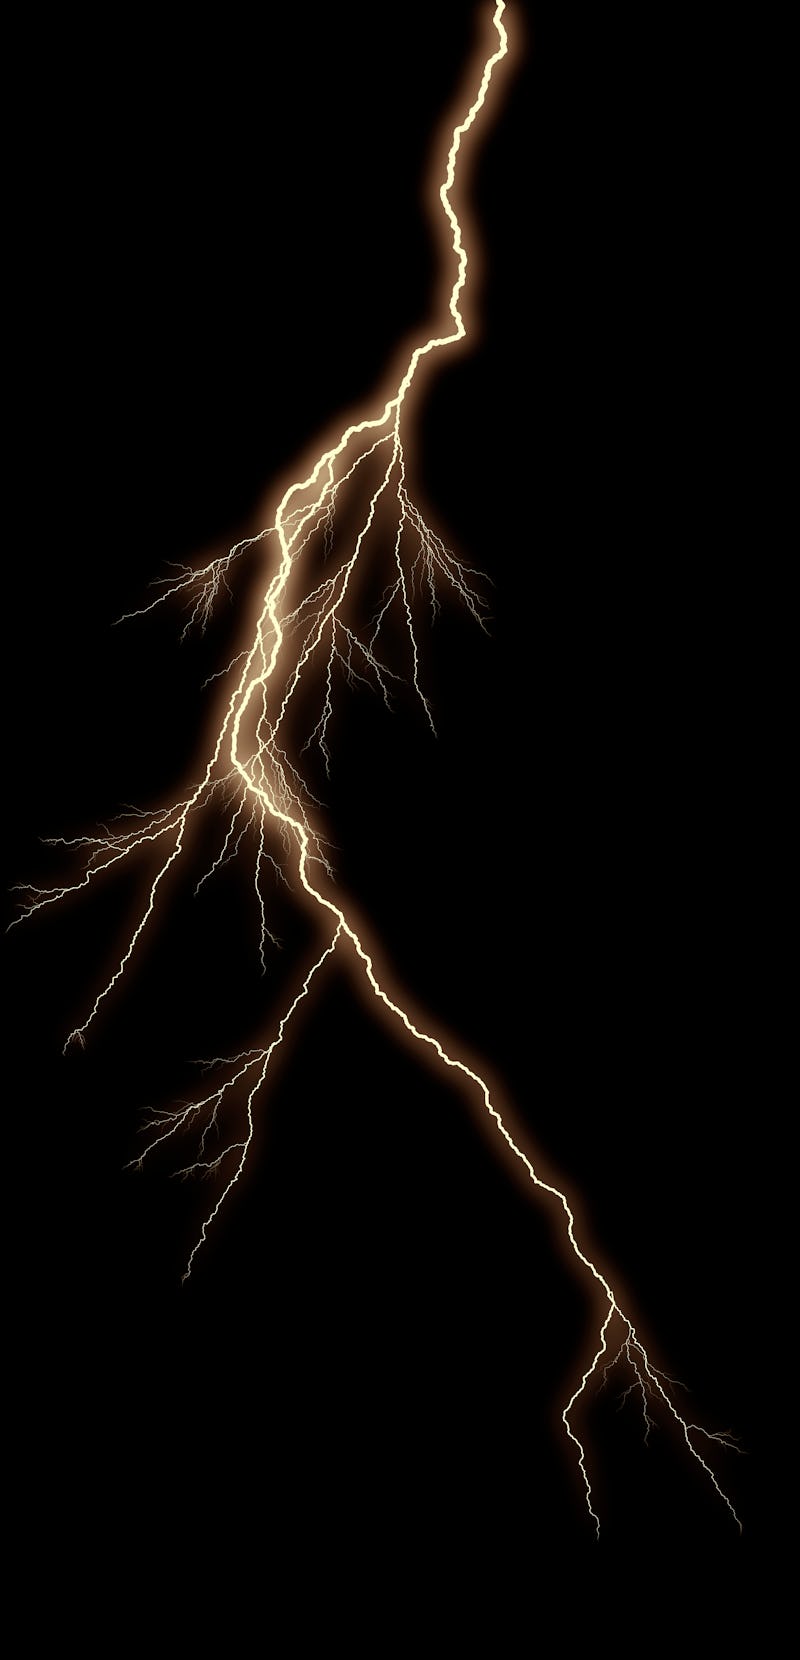 A bolt of lightning